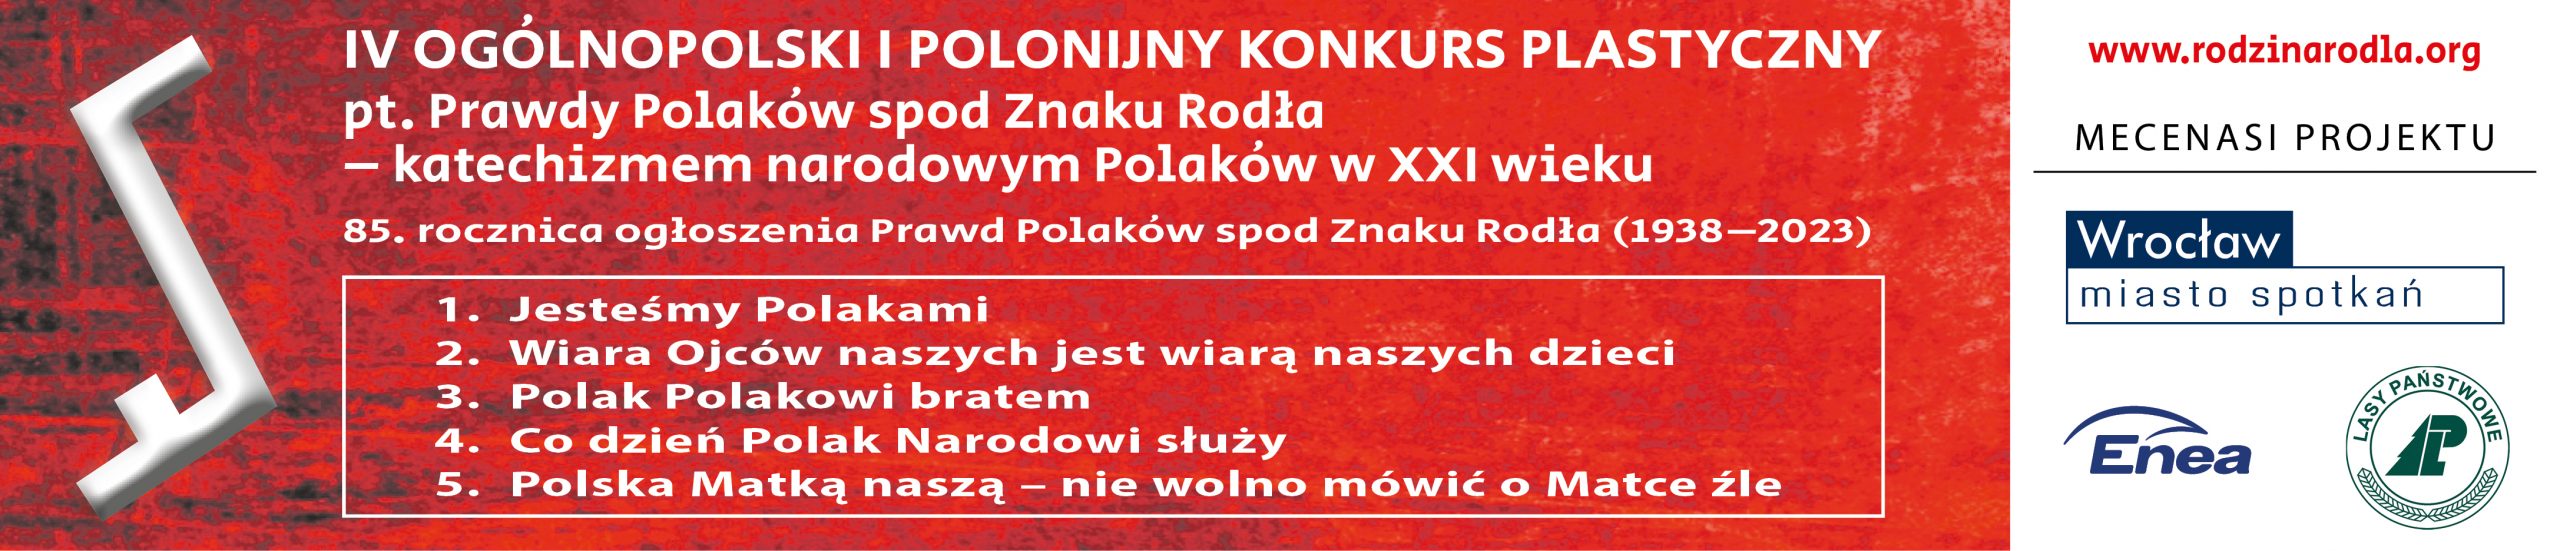 Tytuł IV Ogólnopolskiego i Polonijnego Konkursu Plastycznego